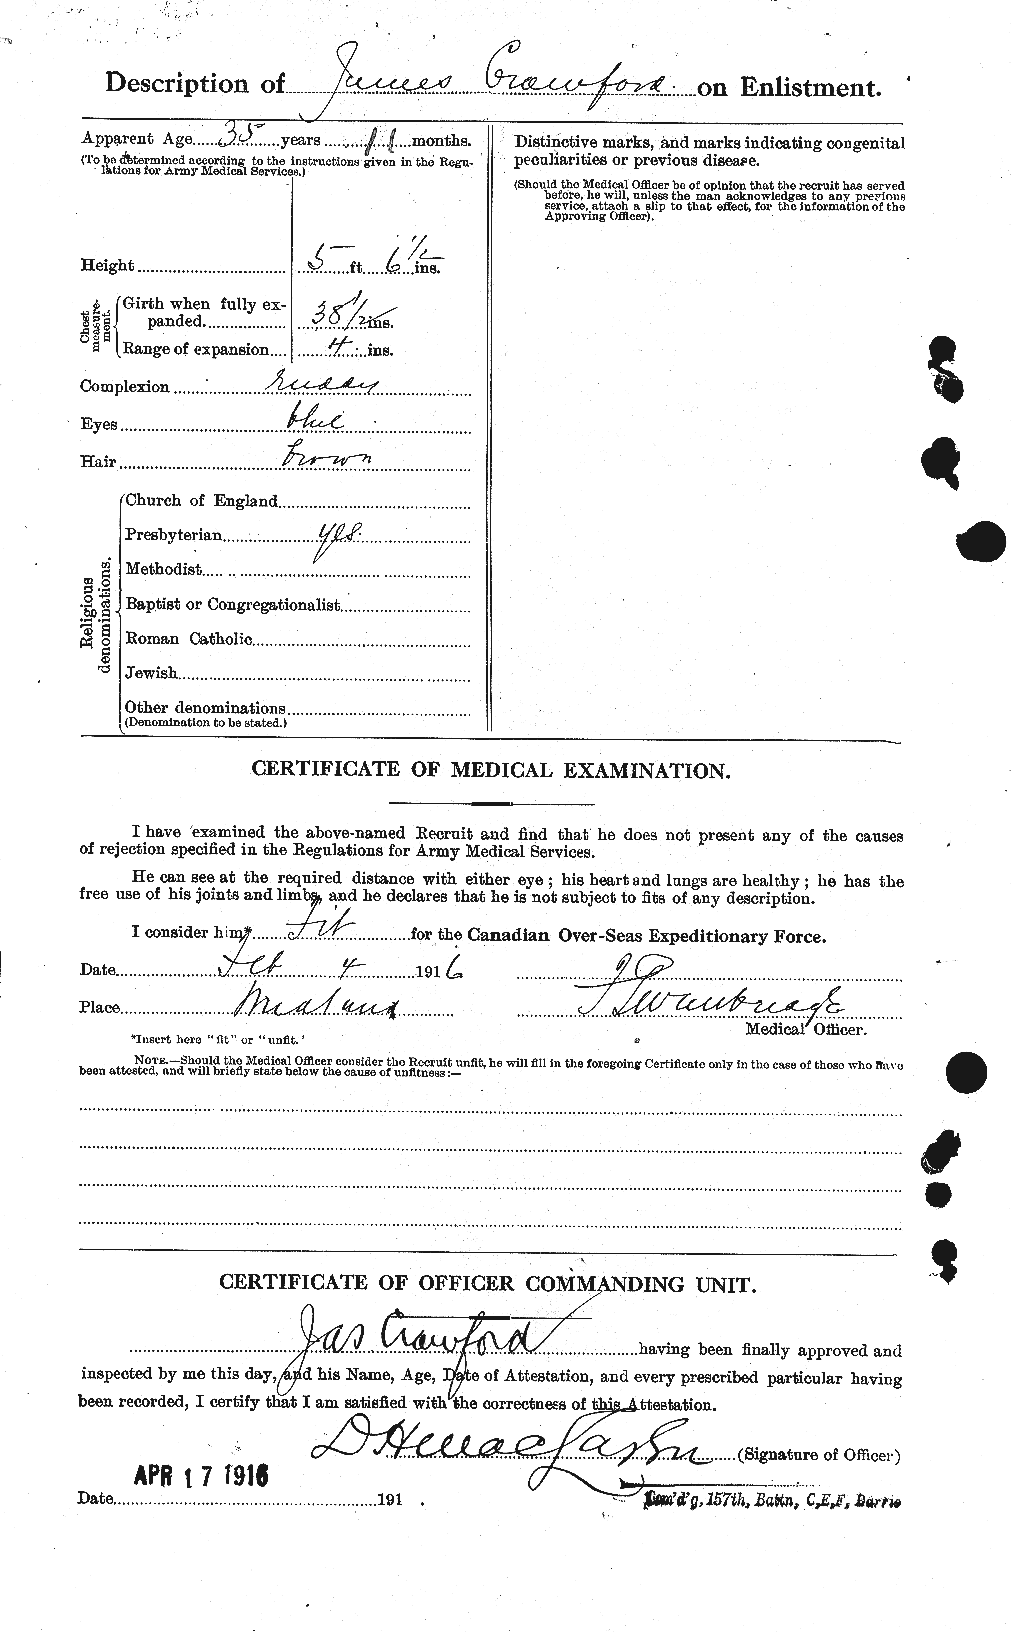 Dossiers du Personnel de la Première Guerre mondiale - CEC 062767b